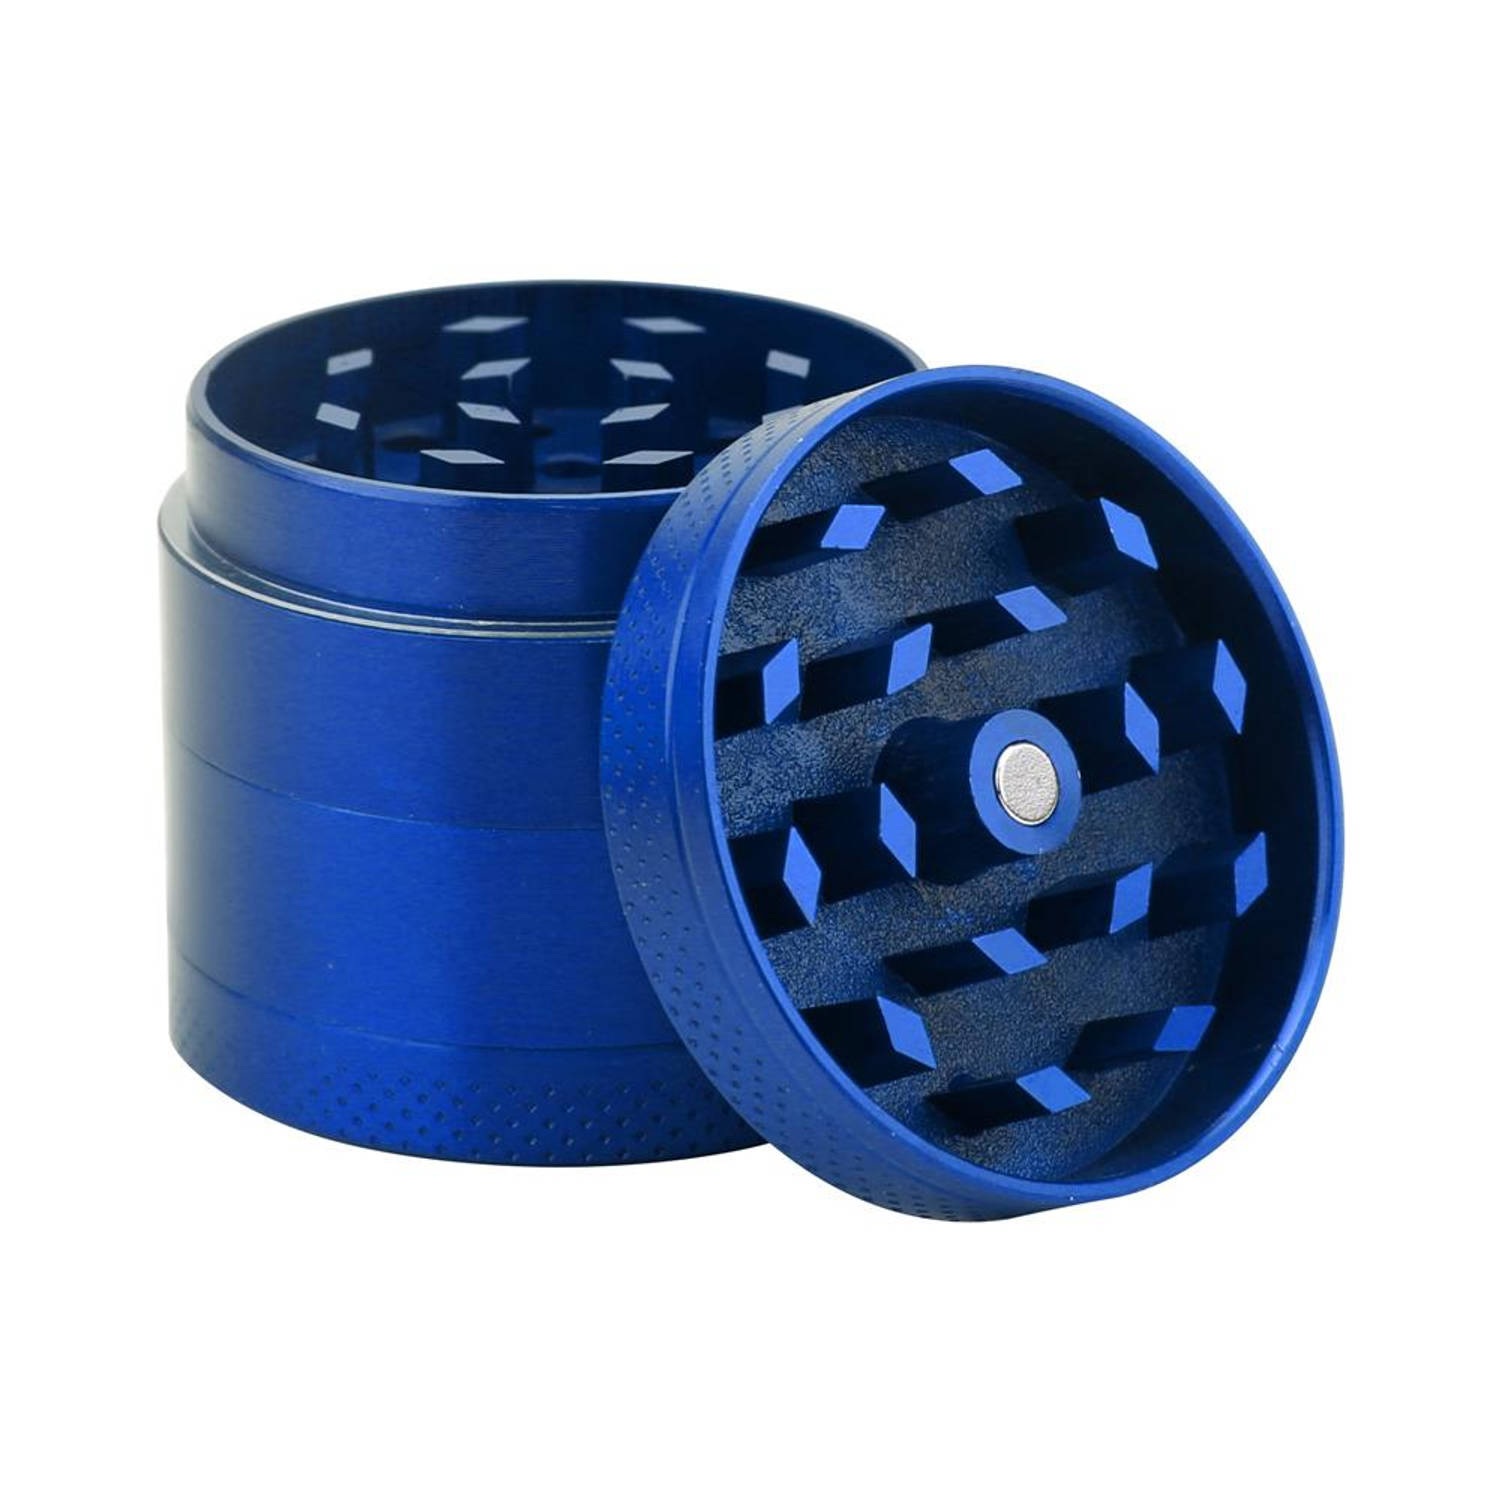 Intirilife grinder in metallic blauw - 4-delige keukencrusher van metaal voor het malen en versnipperen van kruiden